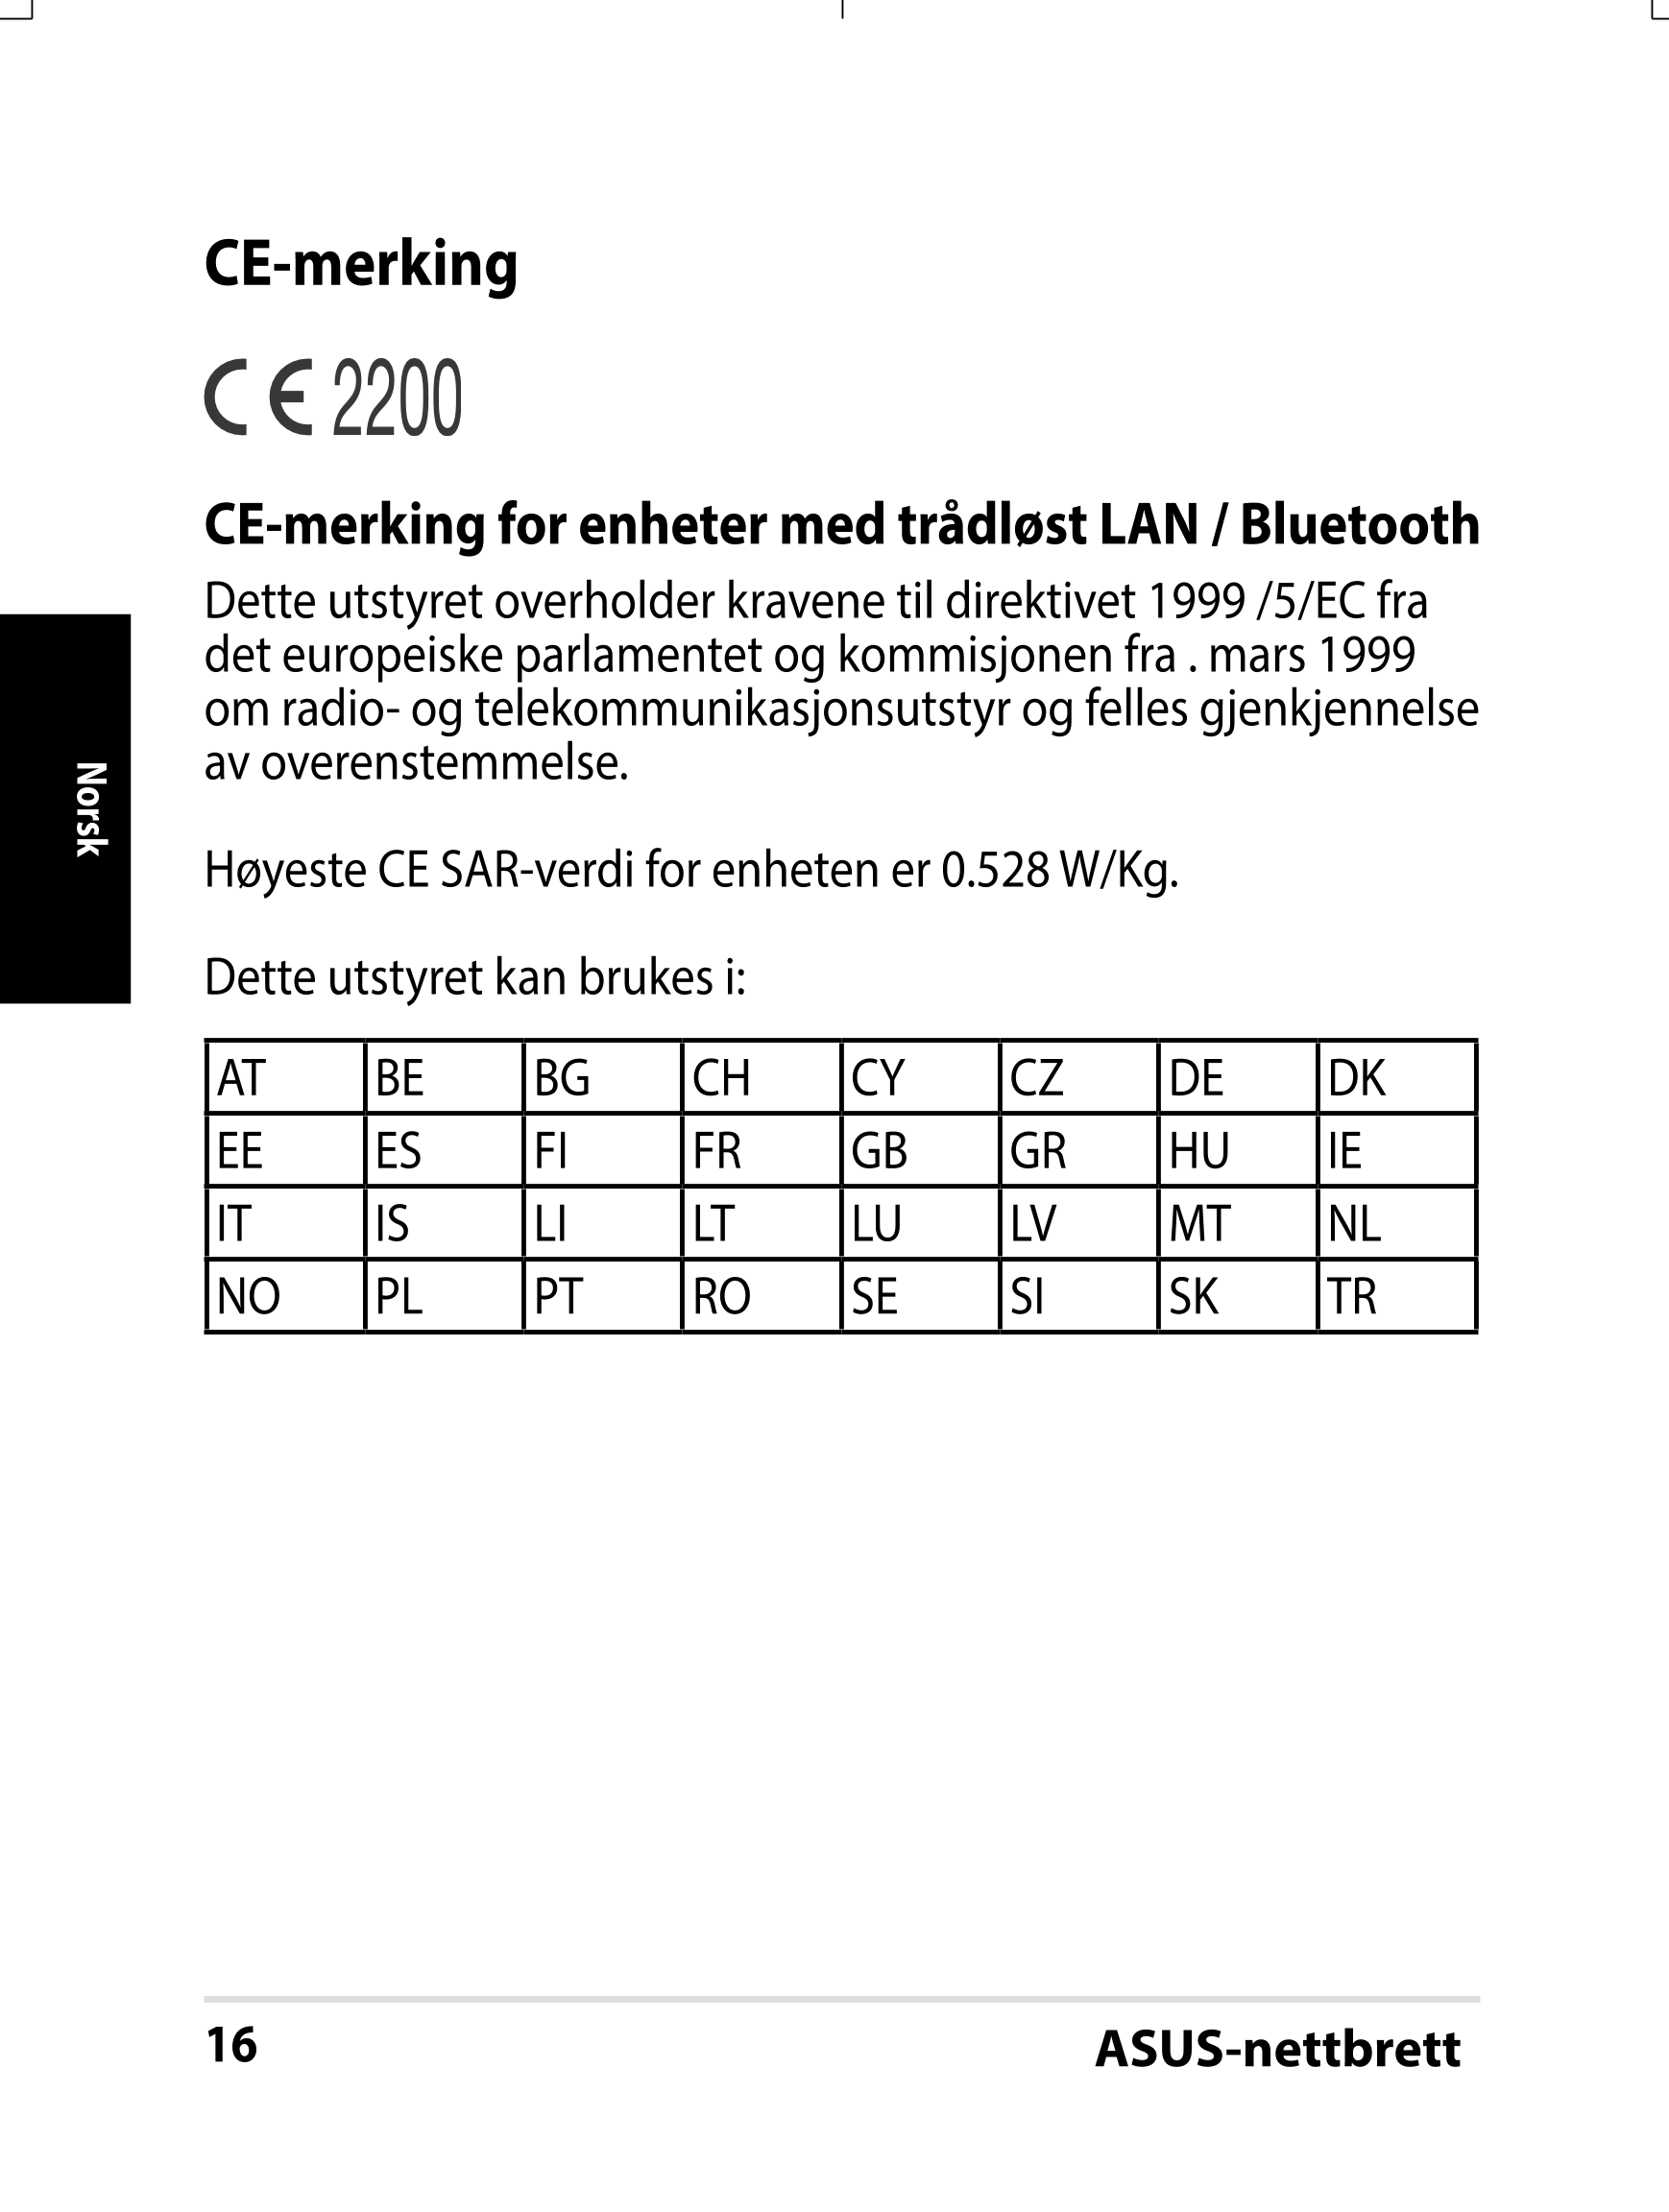 CE-merking
CE-merking for enheter med trådløst LAN / Bluetooth
Dette utstyret overholder kravene til direktivet 1999 /5/EC fra 
